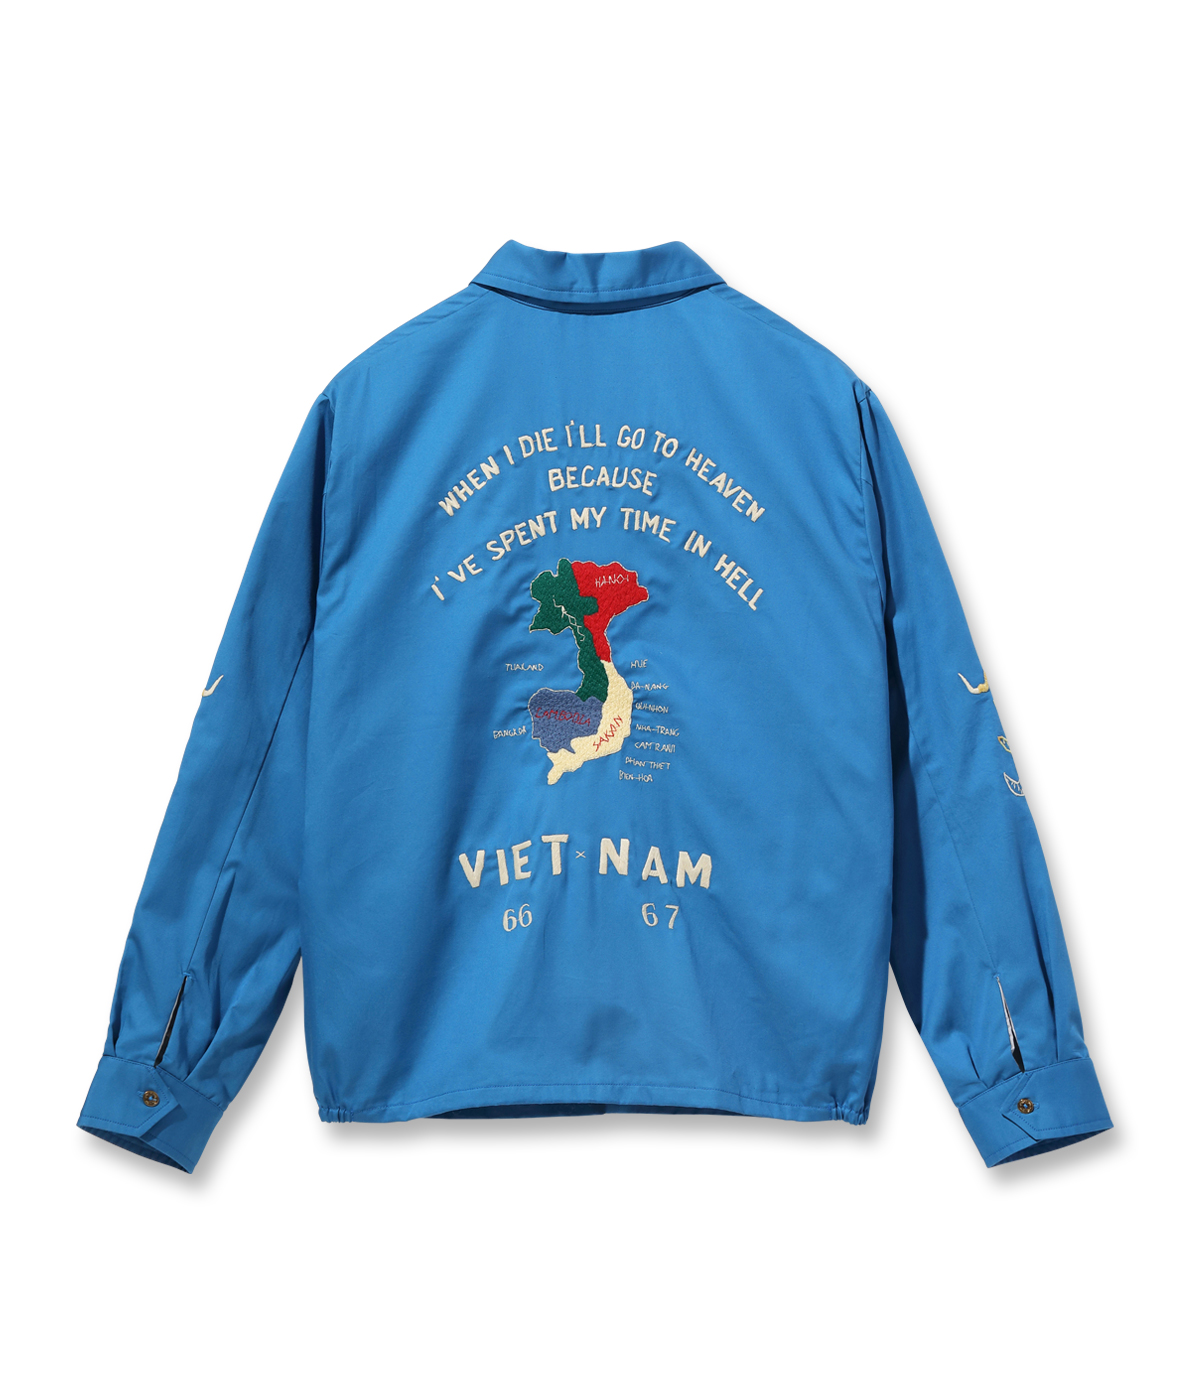 Lot No. TT15493 / Mid 1960s Style Cotton Vietnam Jacket “VIETNAM 